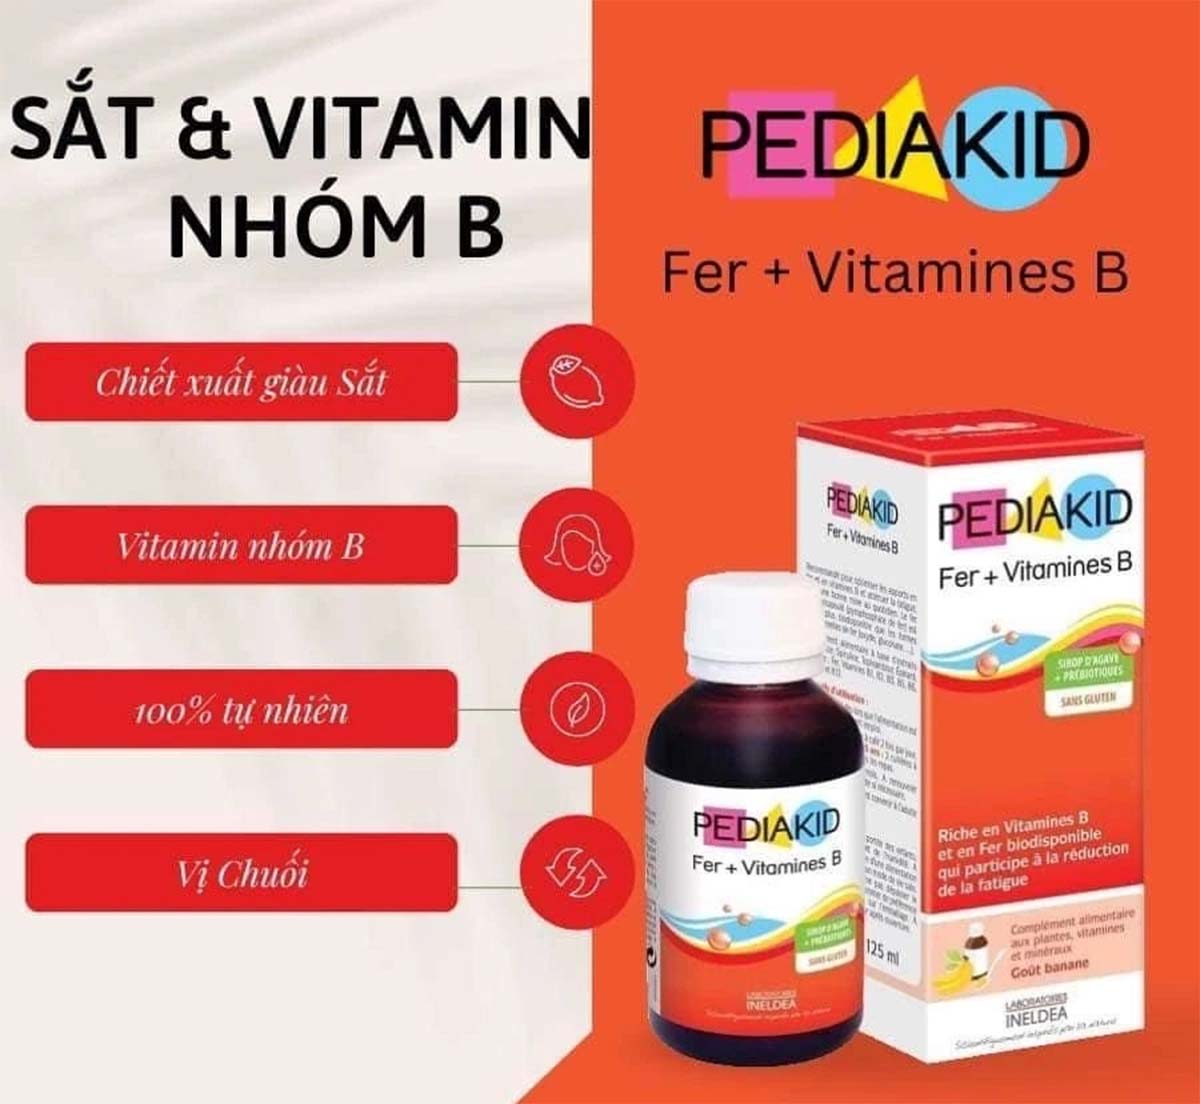 Pediakid Fer + Vitamines B giúp bổ sung dưỡng chất cho trẻ